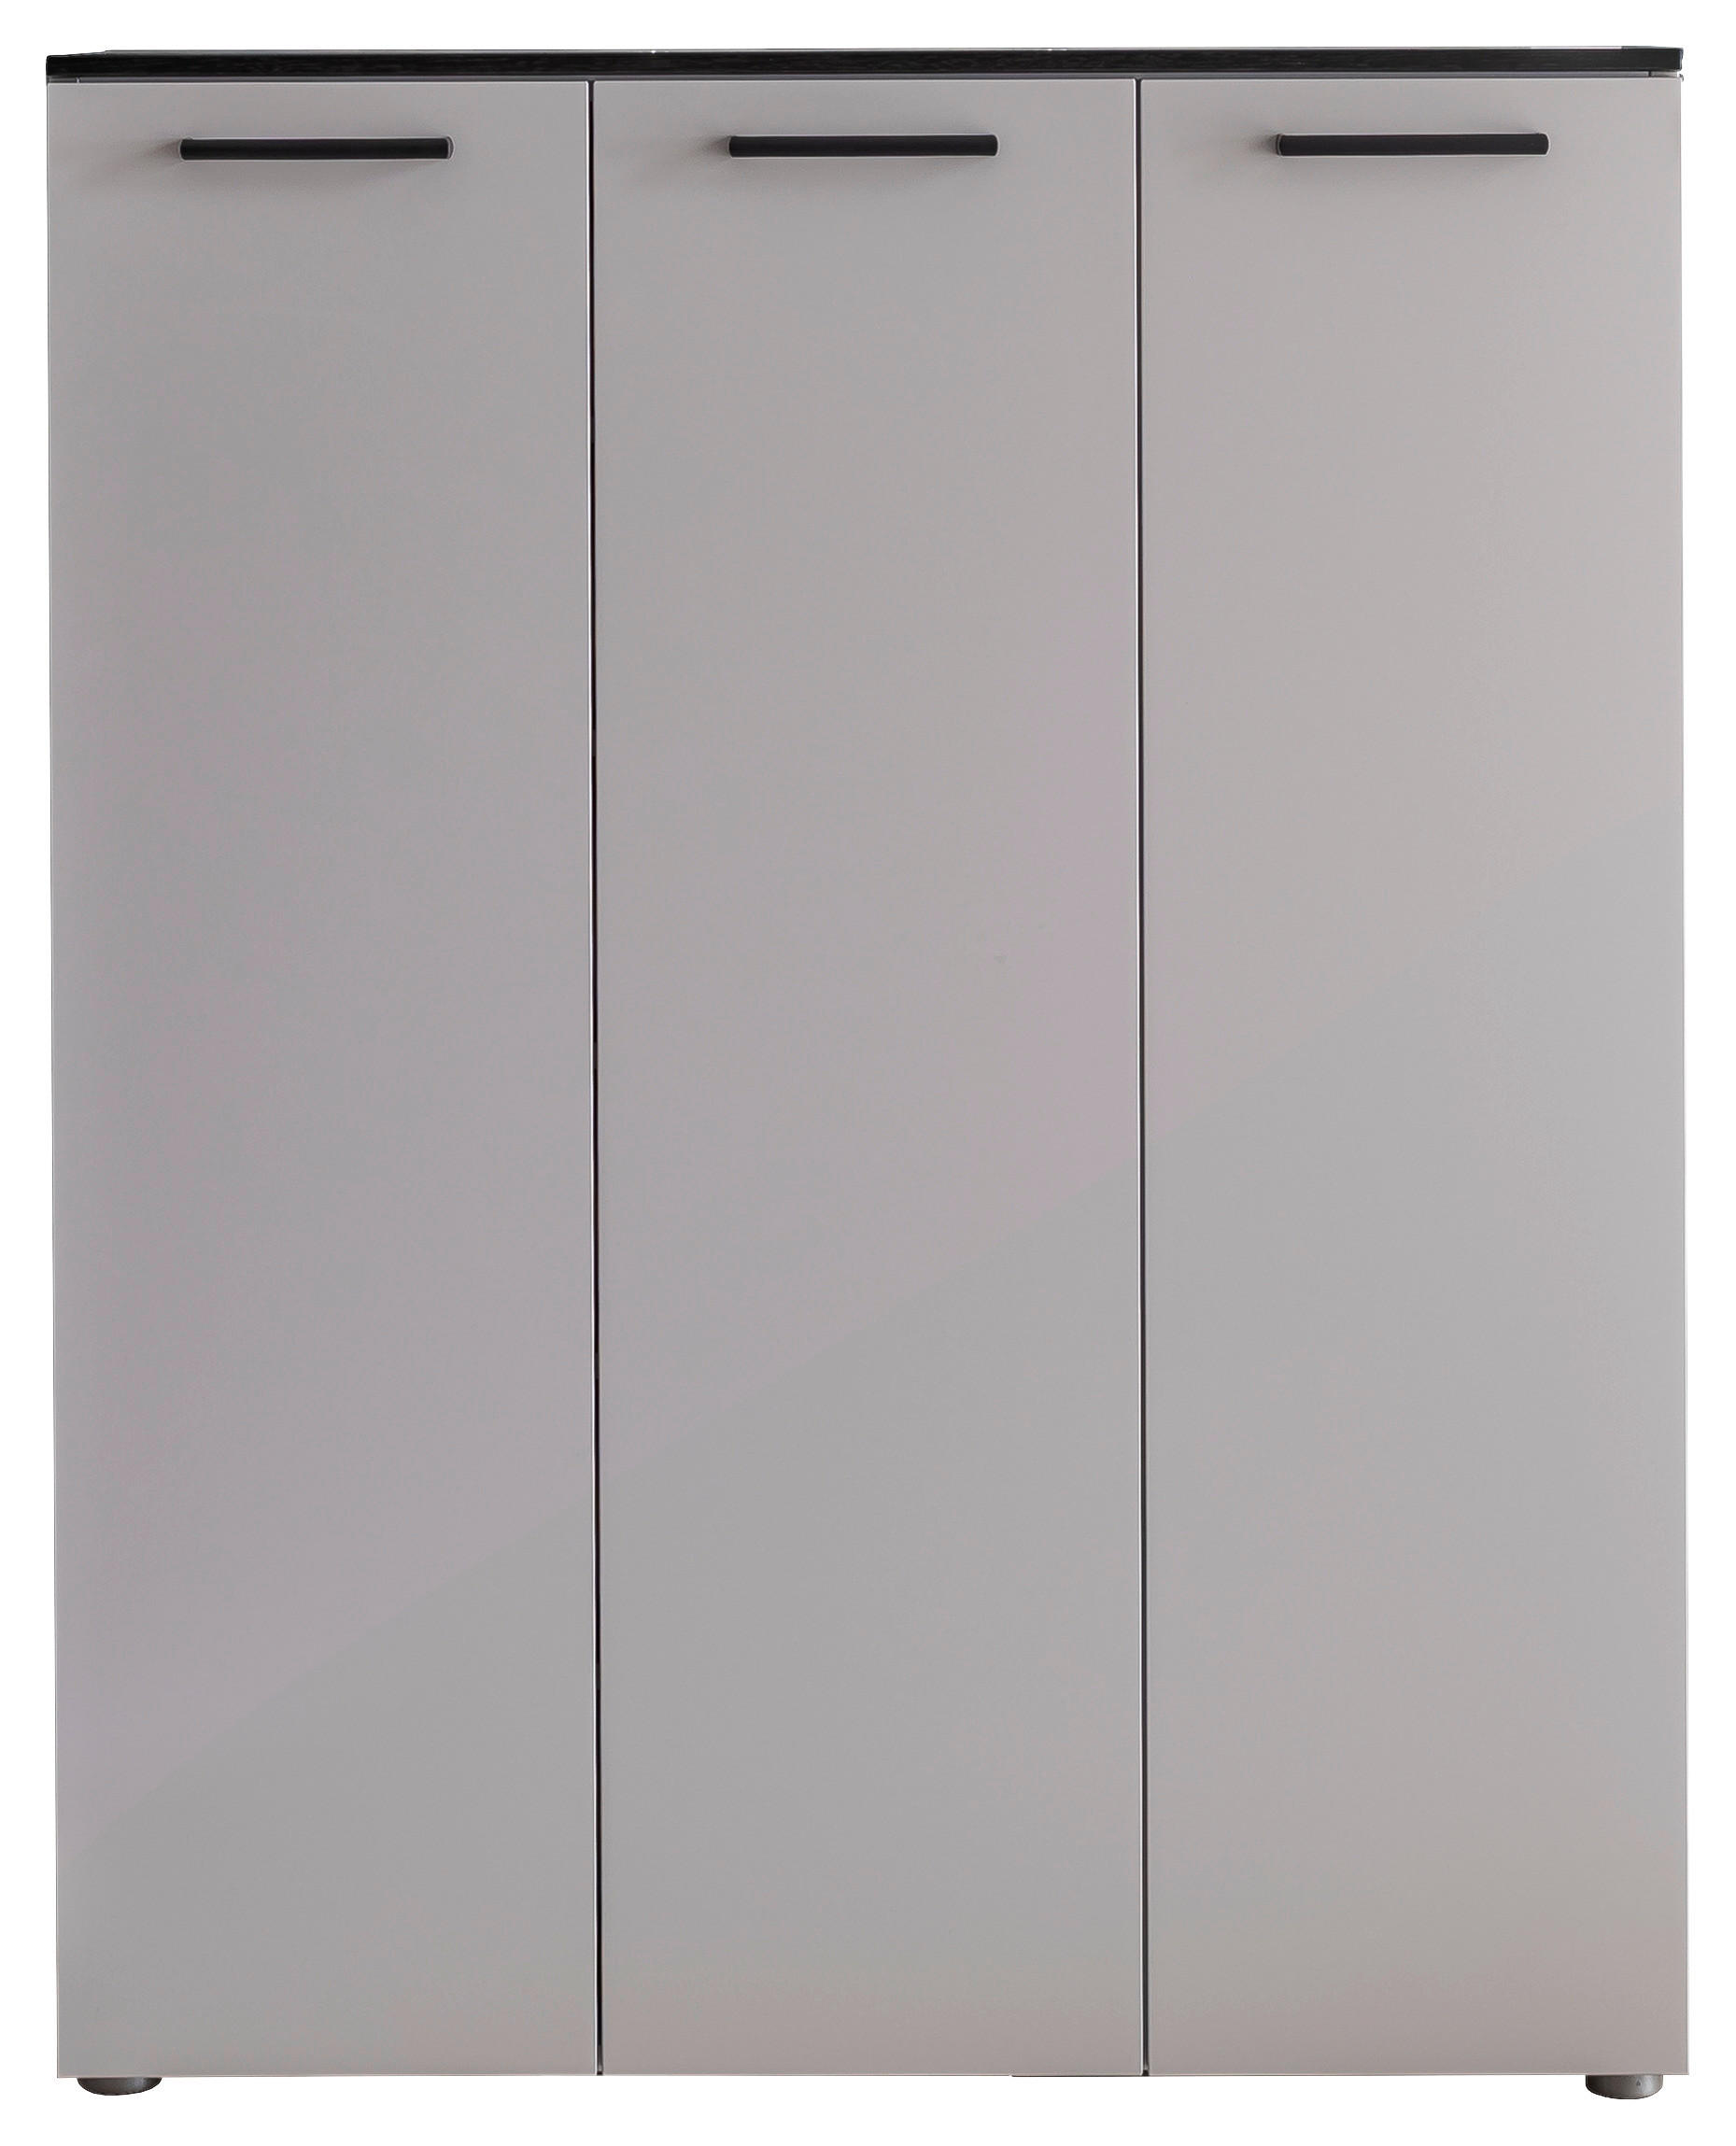 SCHUHSCHRANK Eiche furniert Grau, Eichefarben  - Eichefarben/Silberfarben, Design, Holz/Holzwerkstoff (102/126/29cm) - Cassando